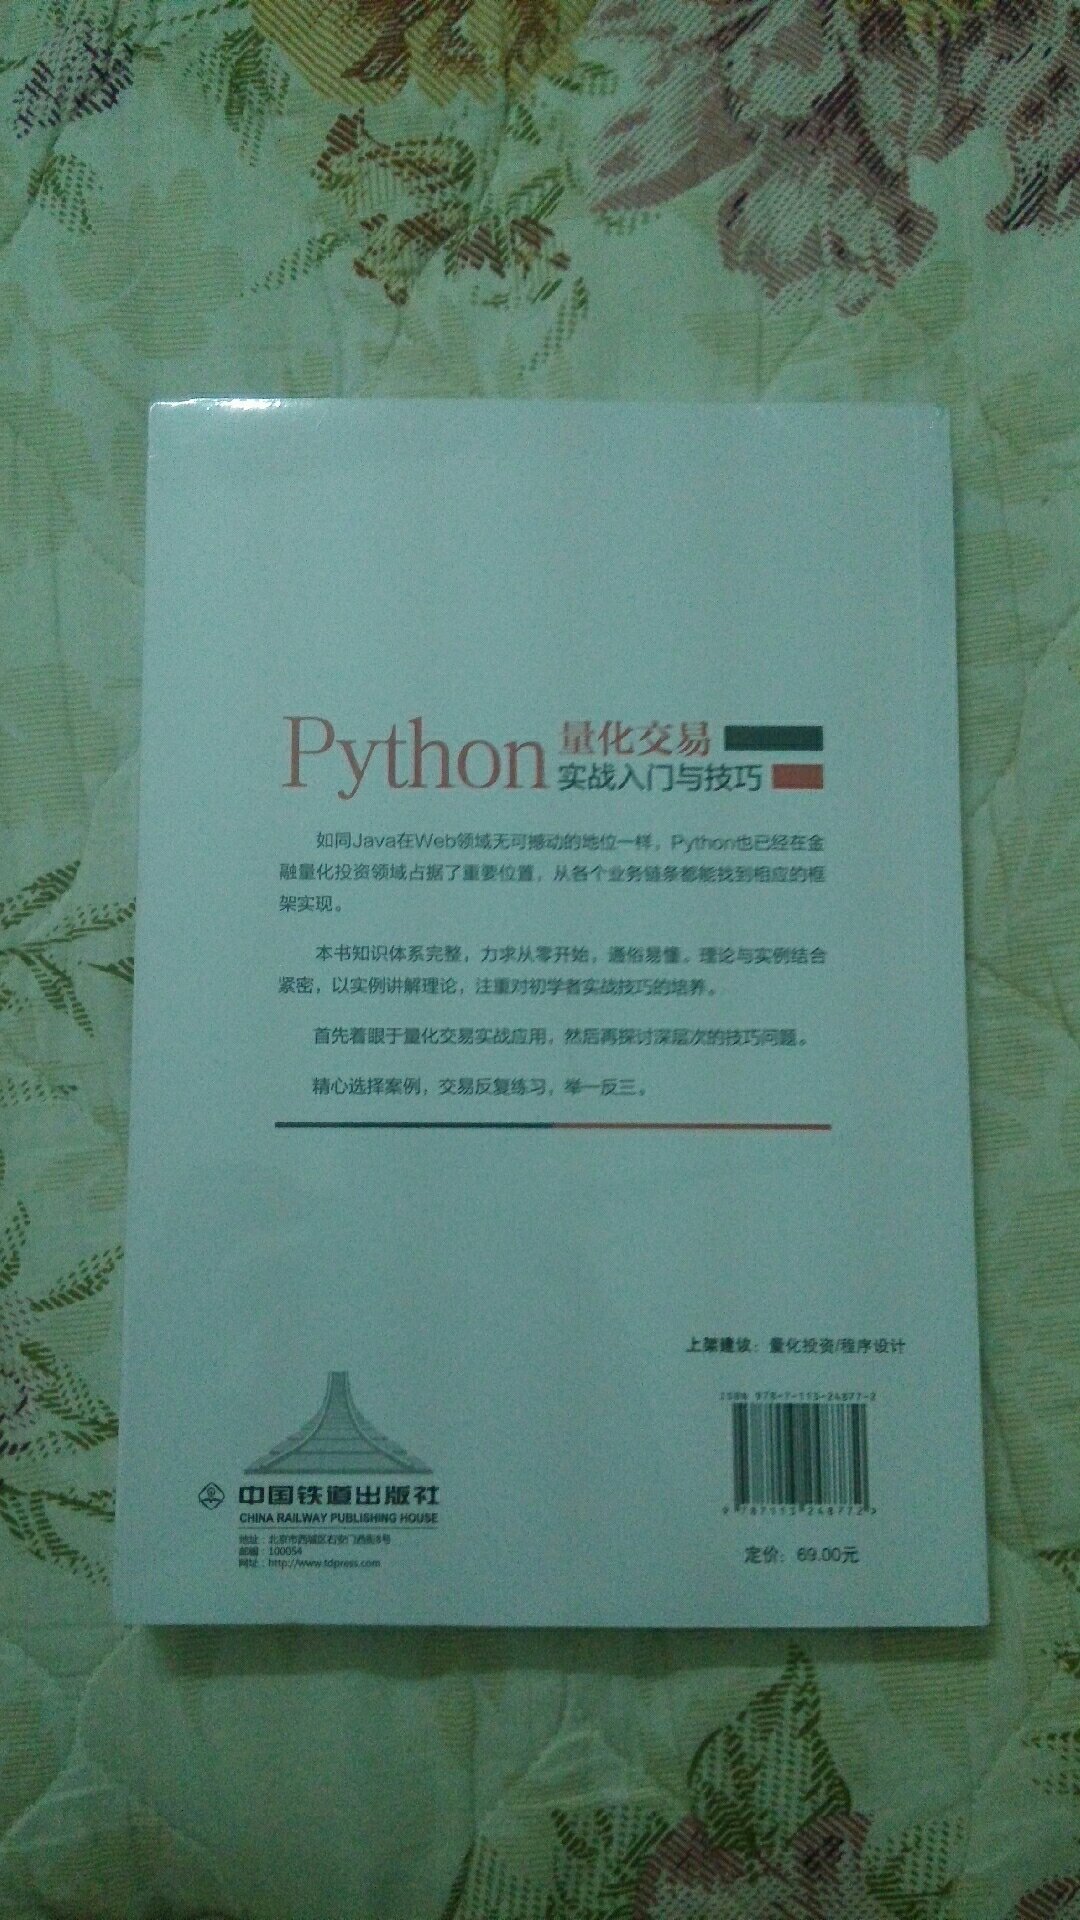 这本书主要从Python的语言基础特性开始，到Python金融方面的库使用，最后深入量化交易策略的构建，通俗易懂。书中的例子使用了聚宽平台，所以在实践方面比较方便。有包装，好评。